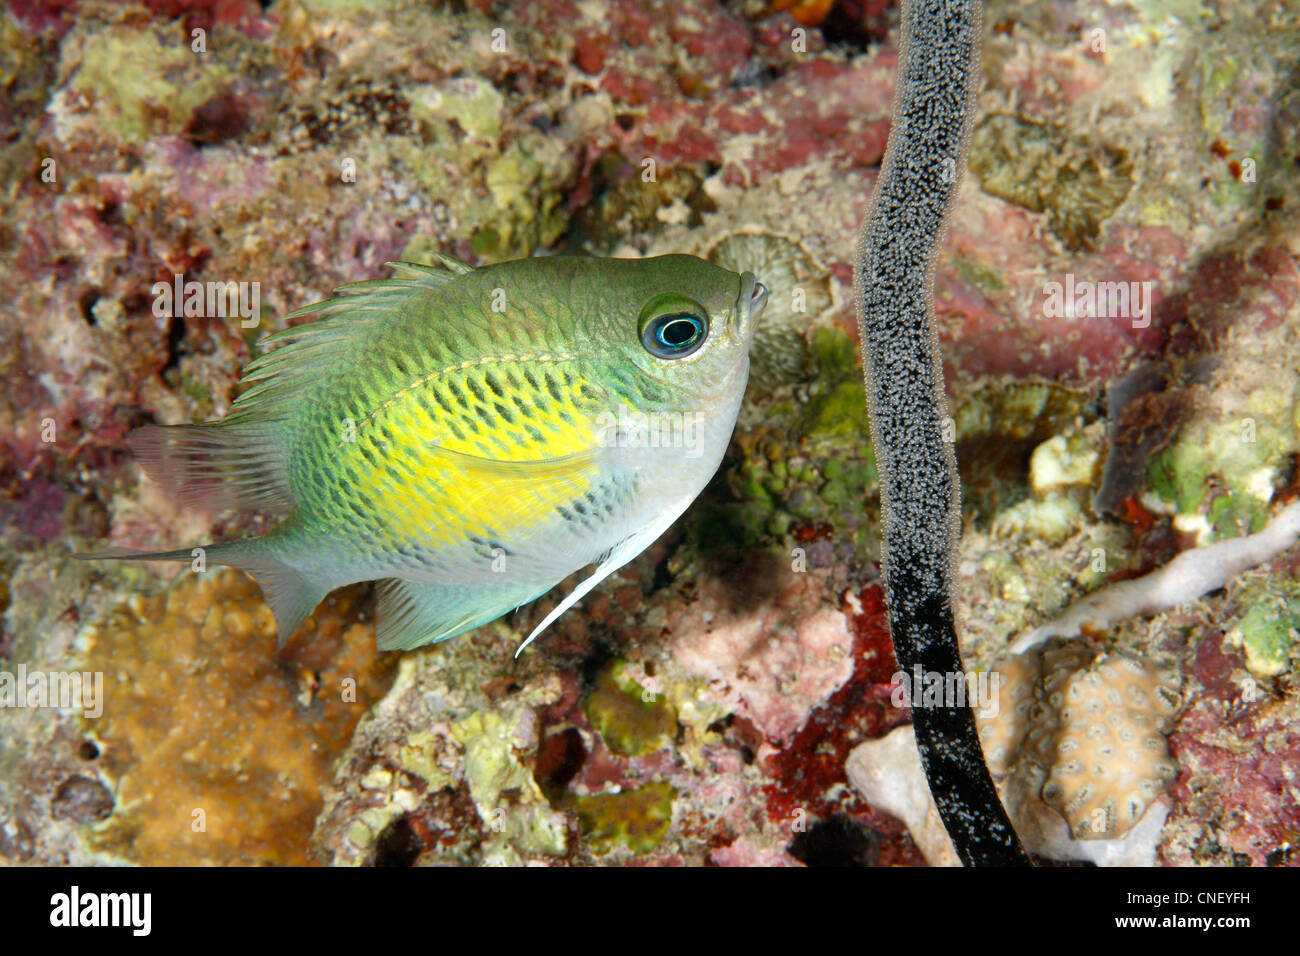 Männliche staghorn Riffbarsche oder Sergeant Major Fisch, Amblyglyphidodon Curacao tendenziell Eier auf einem toten Meer Peitsche gelegt. Stockfoto